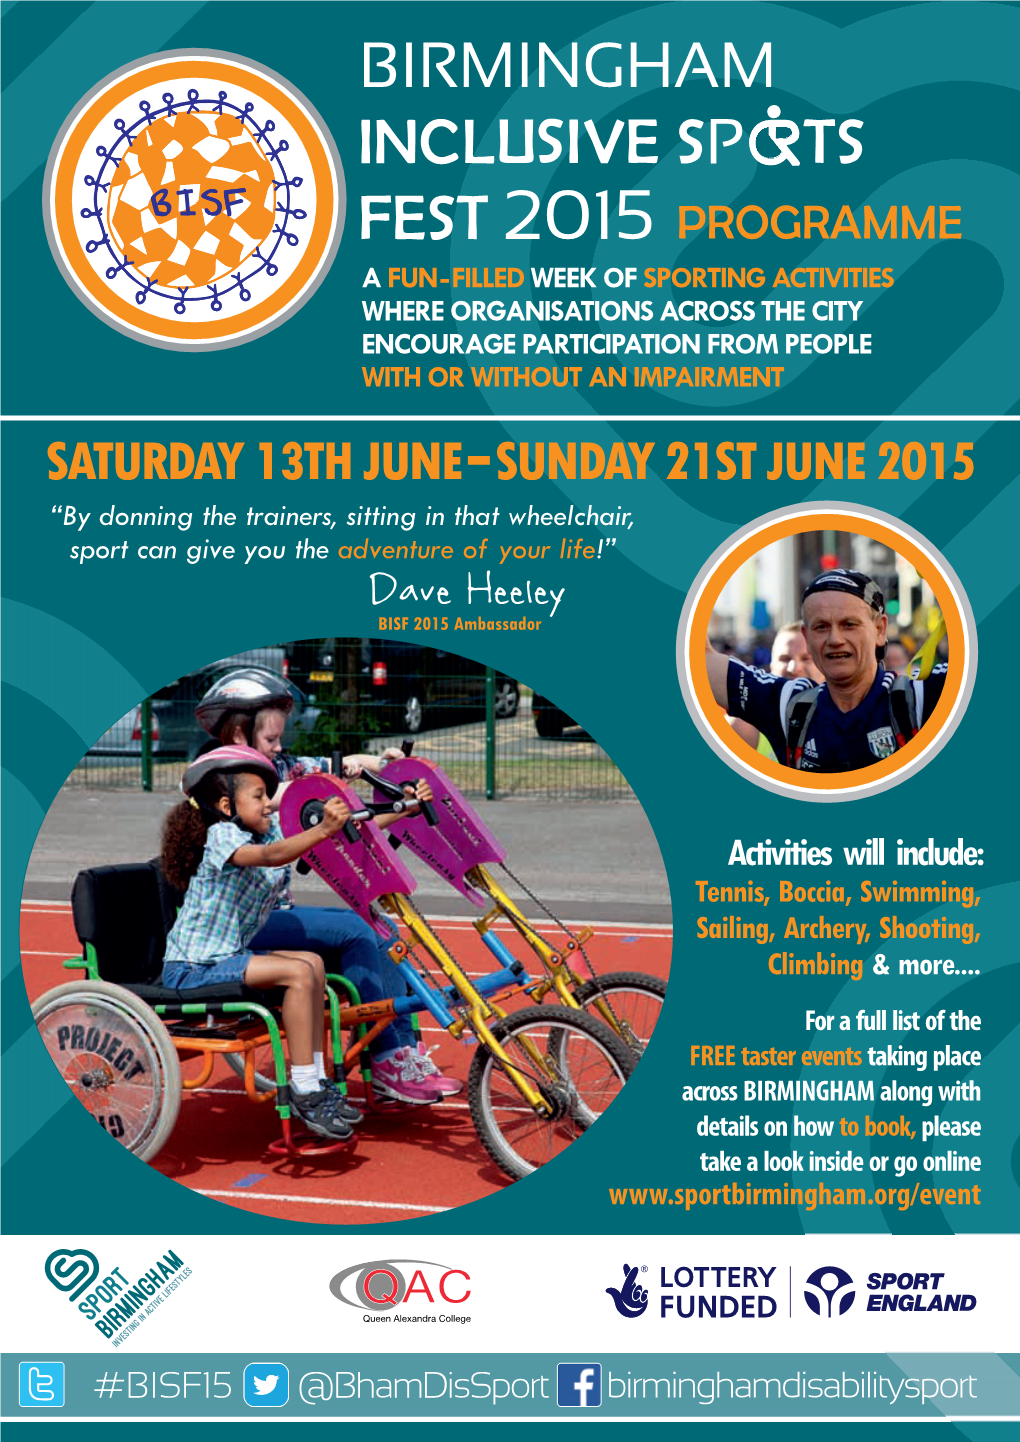 Birmingham Inclusive Sports Fest 2015 Programme